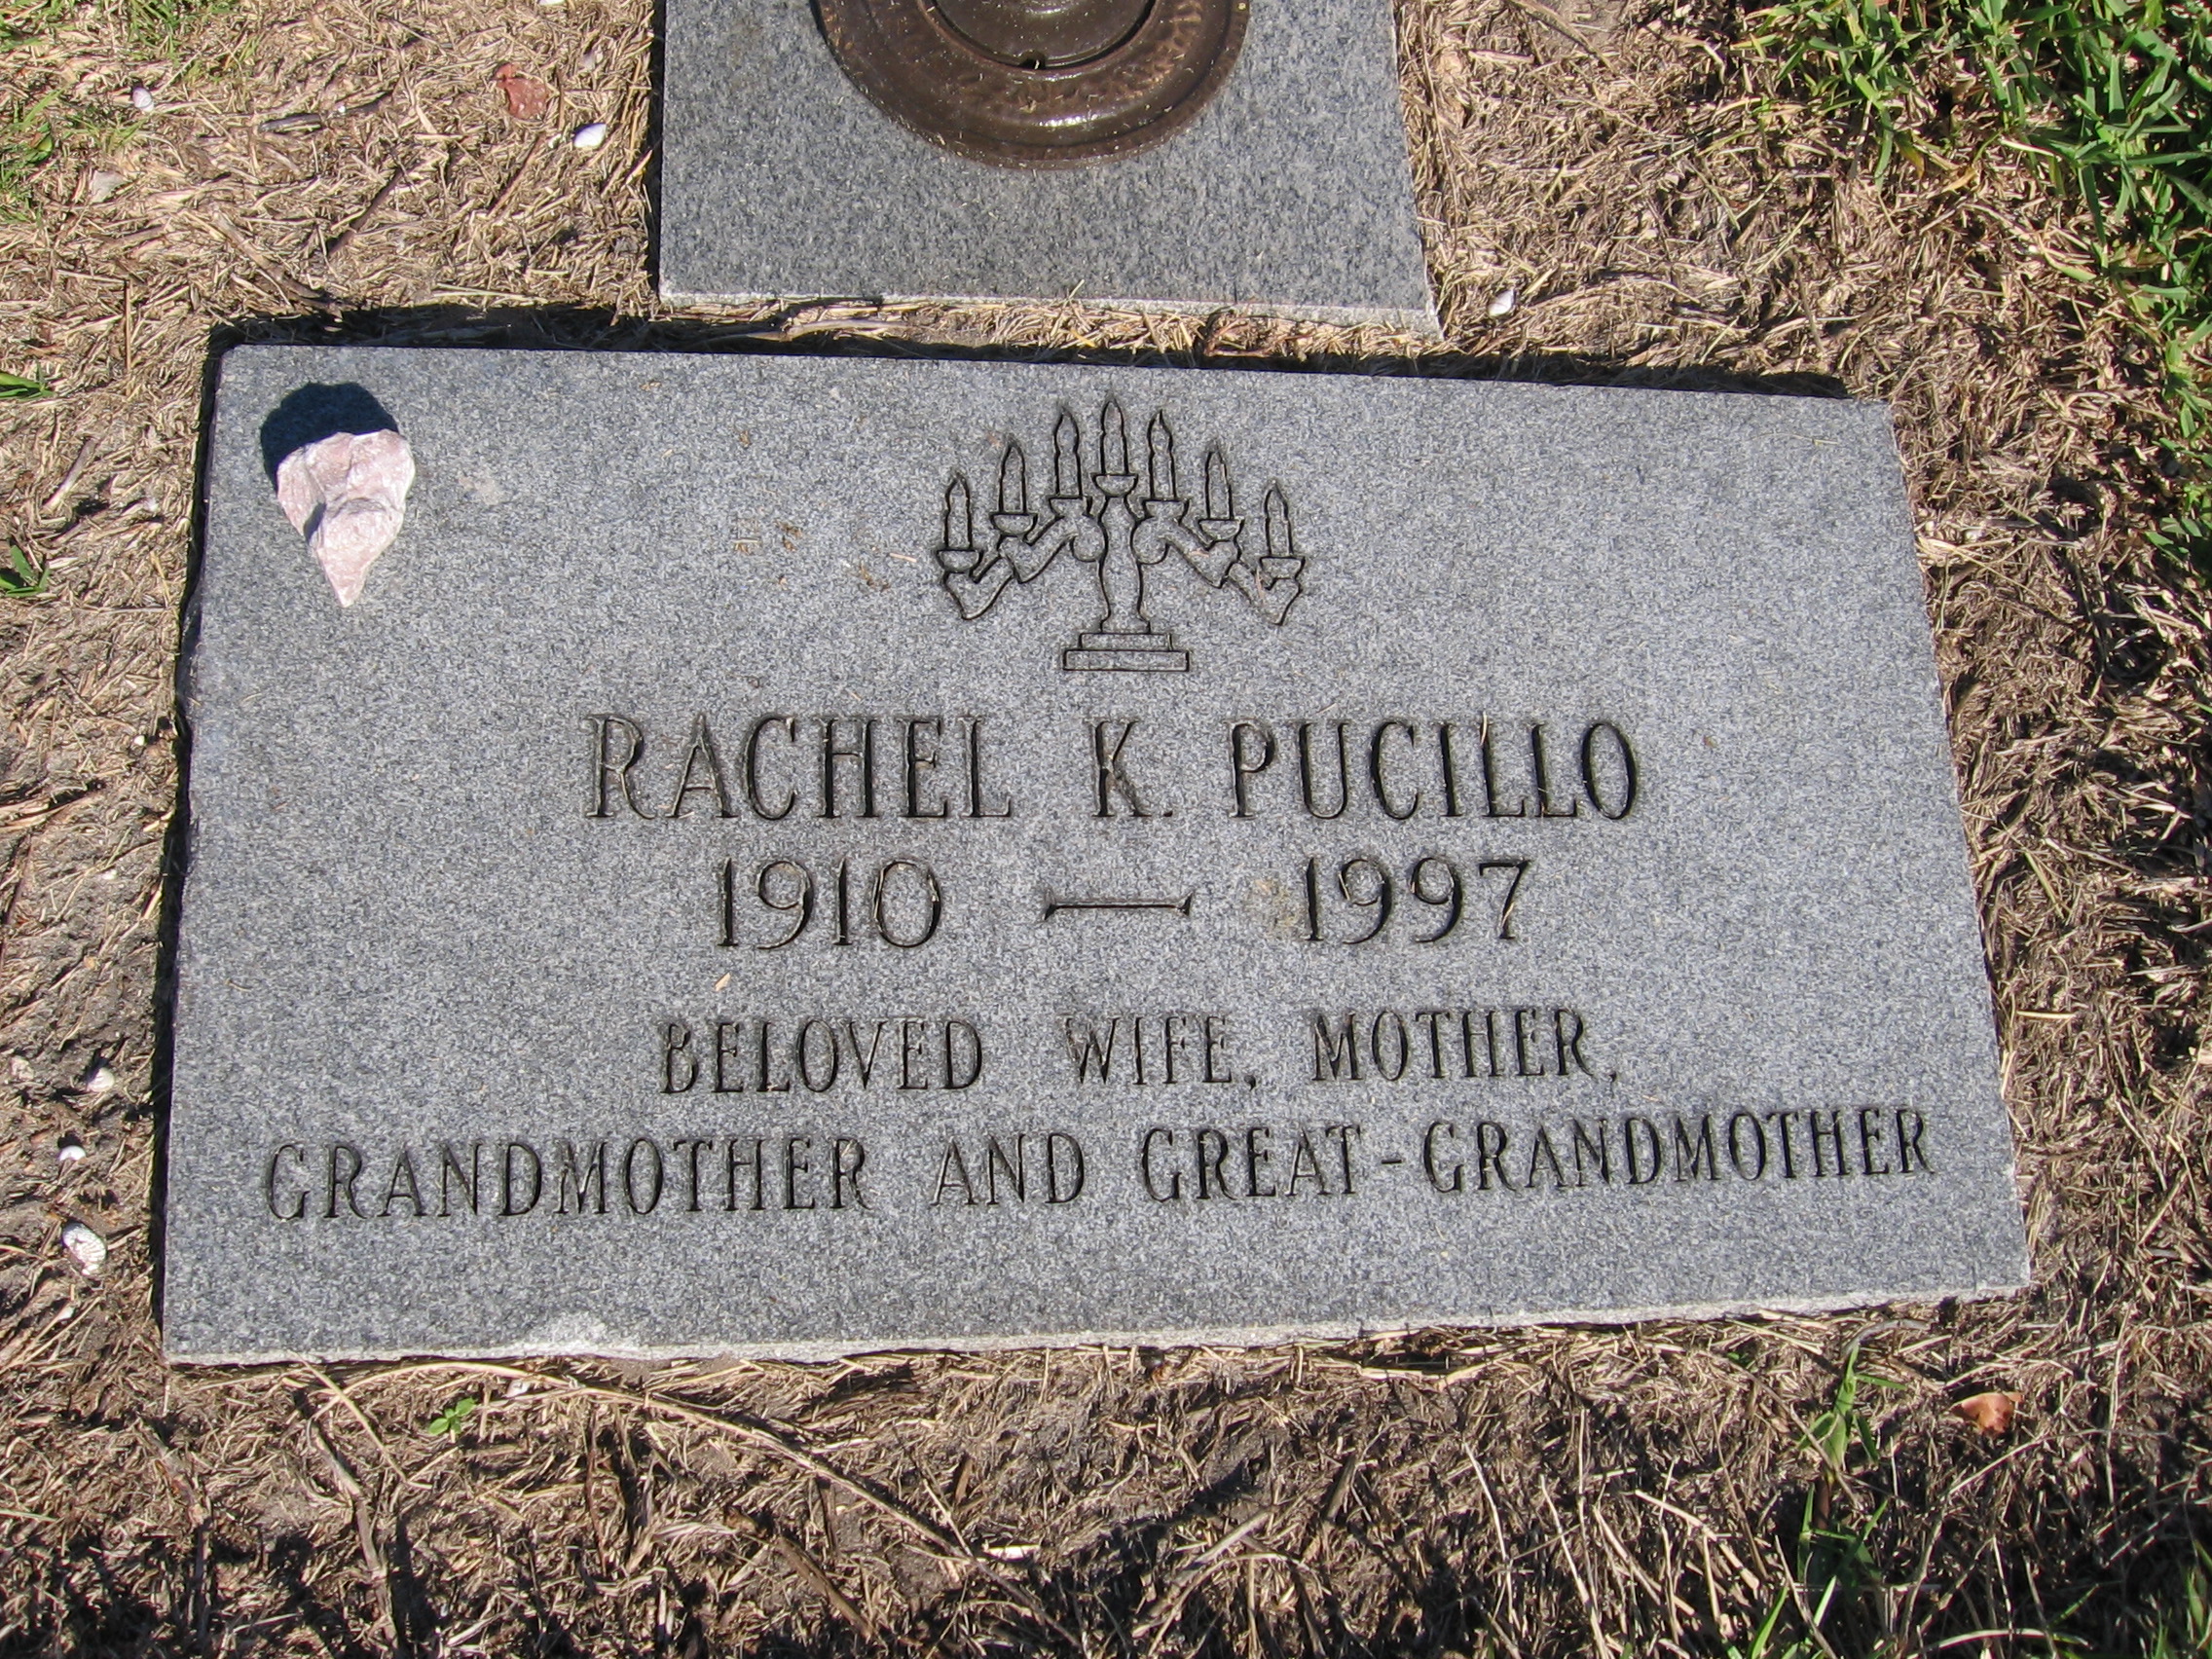 Rachel K Pucillo